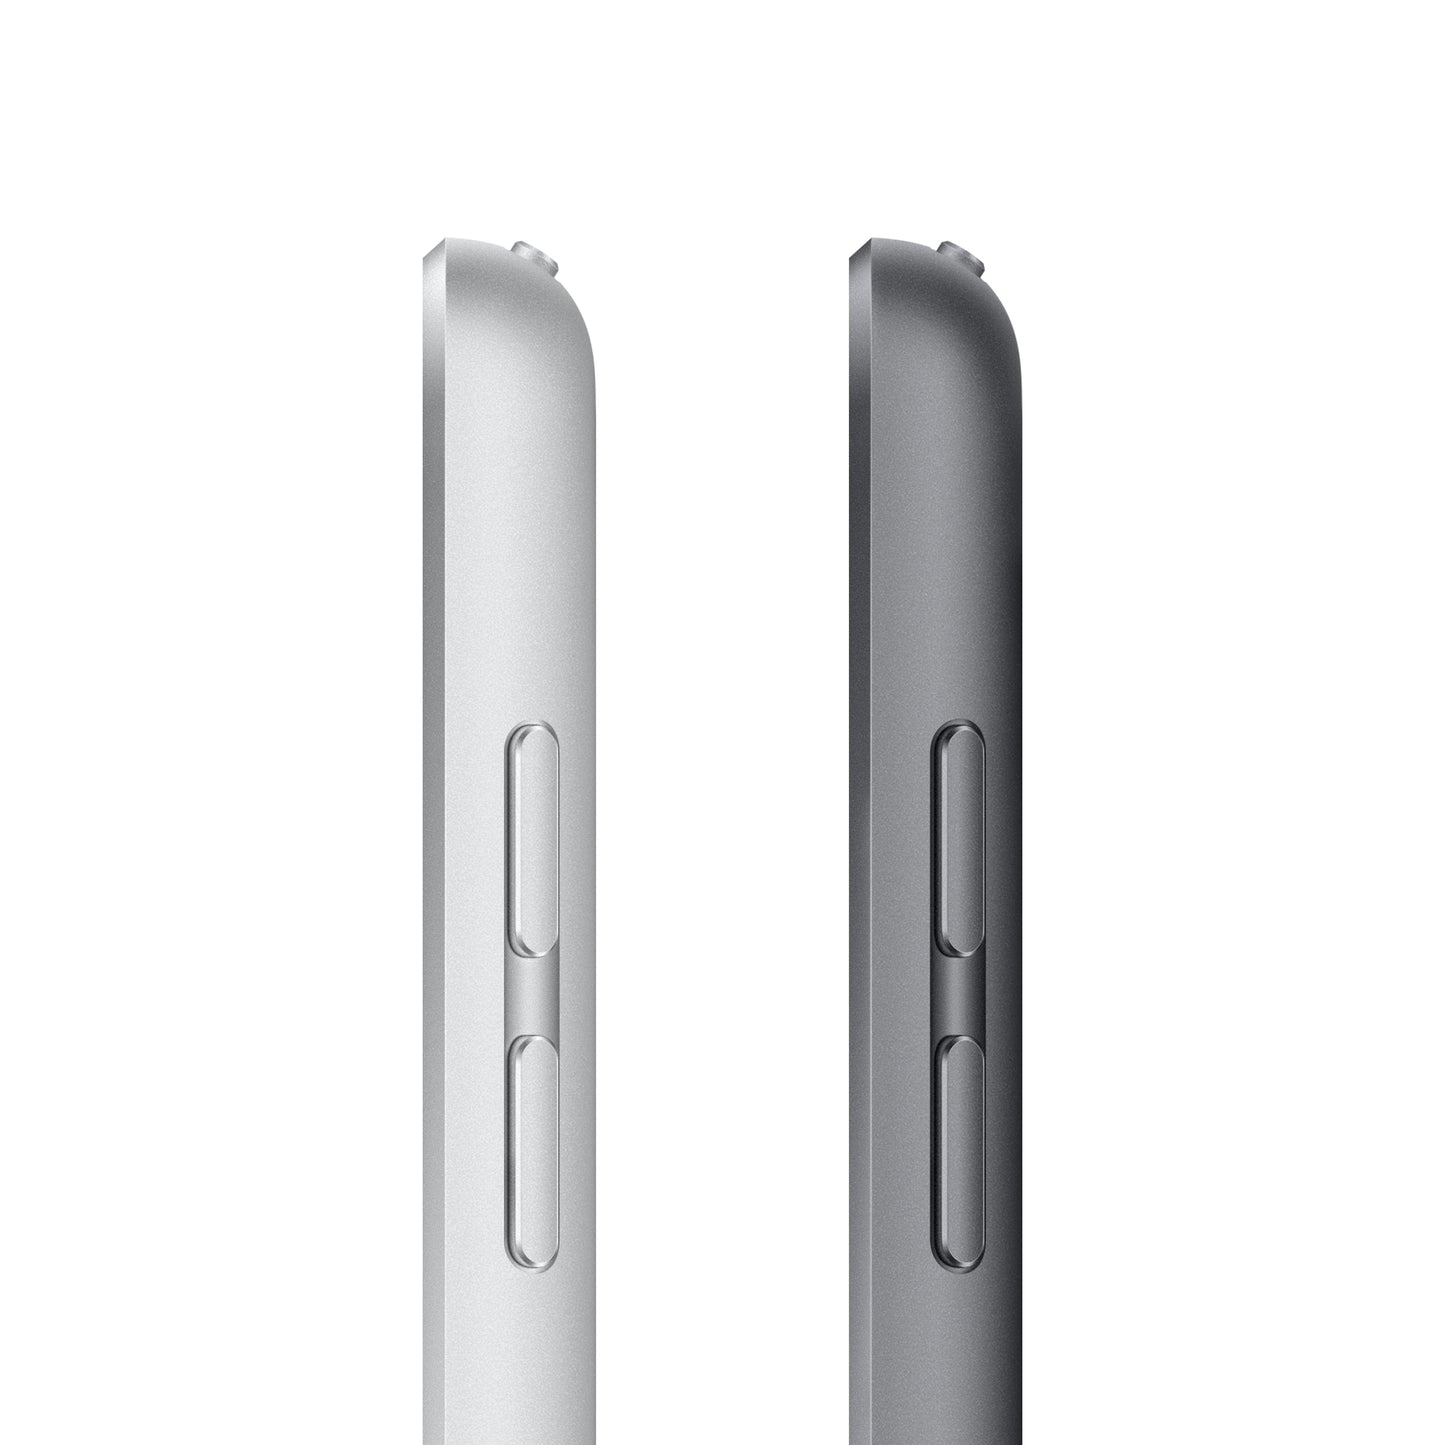 2021 10.2-inch iPad Wi-Fi 64GB - Space Grey (9th generation)